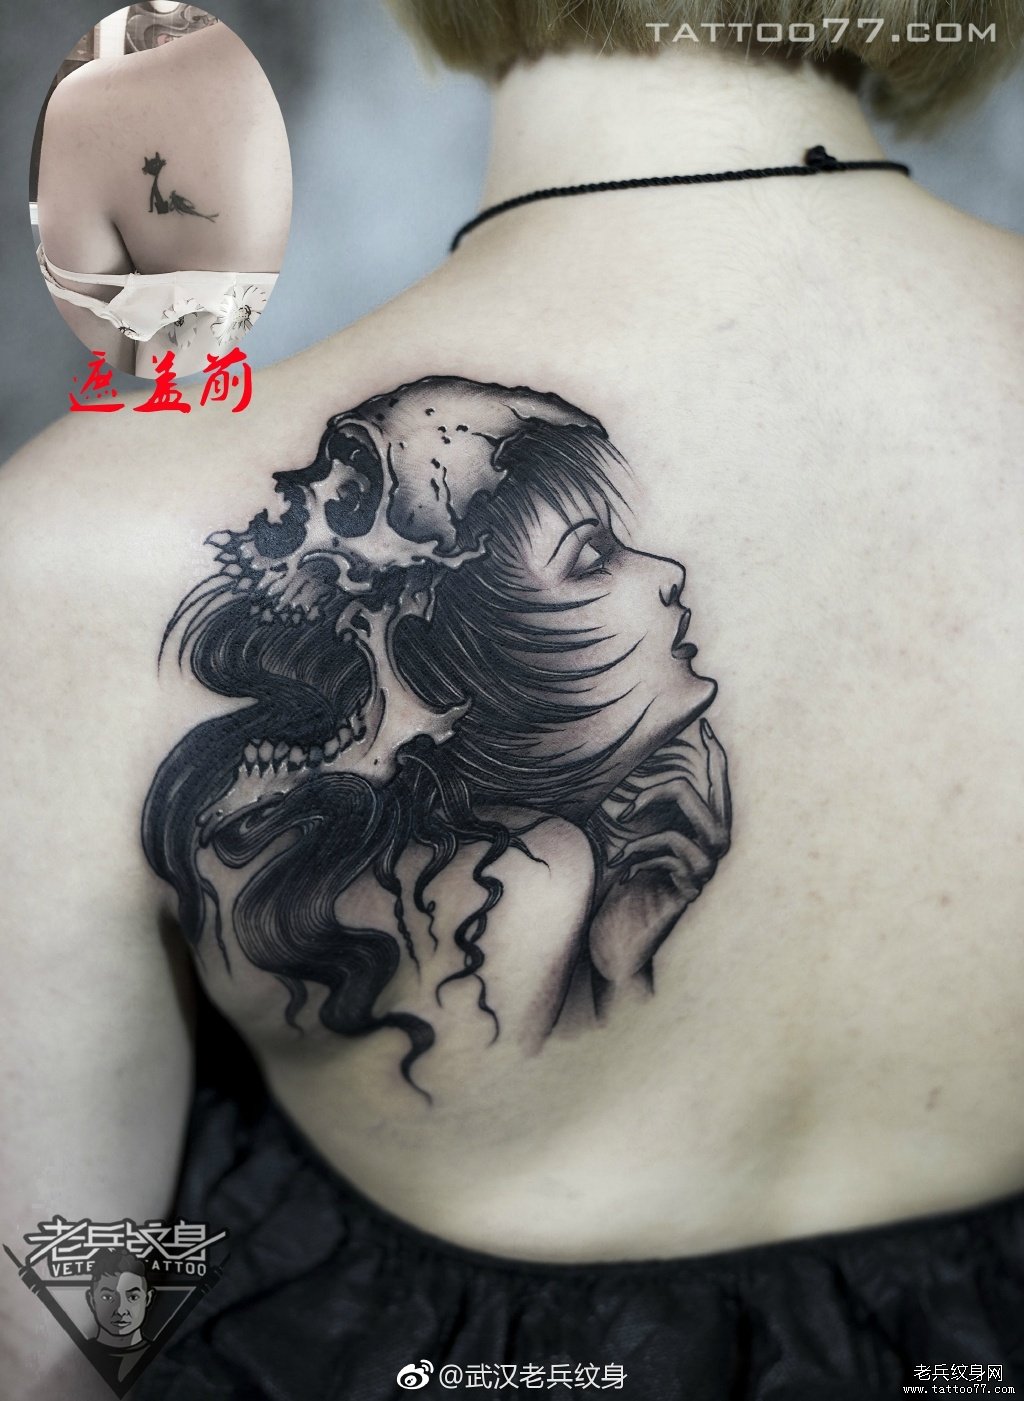 背部女郎骷髅遮盖纹身图案作品